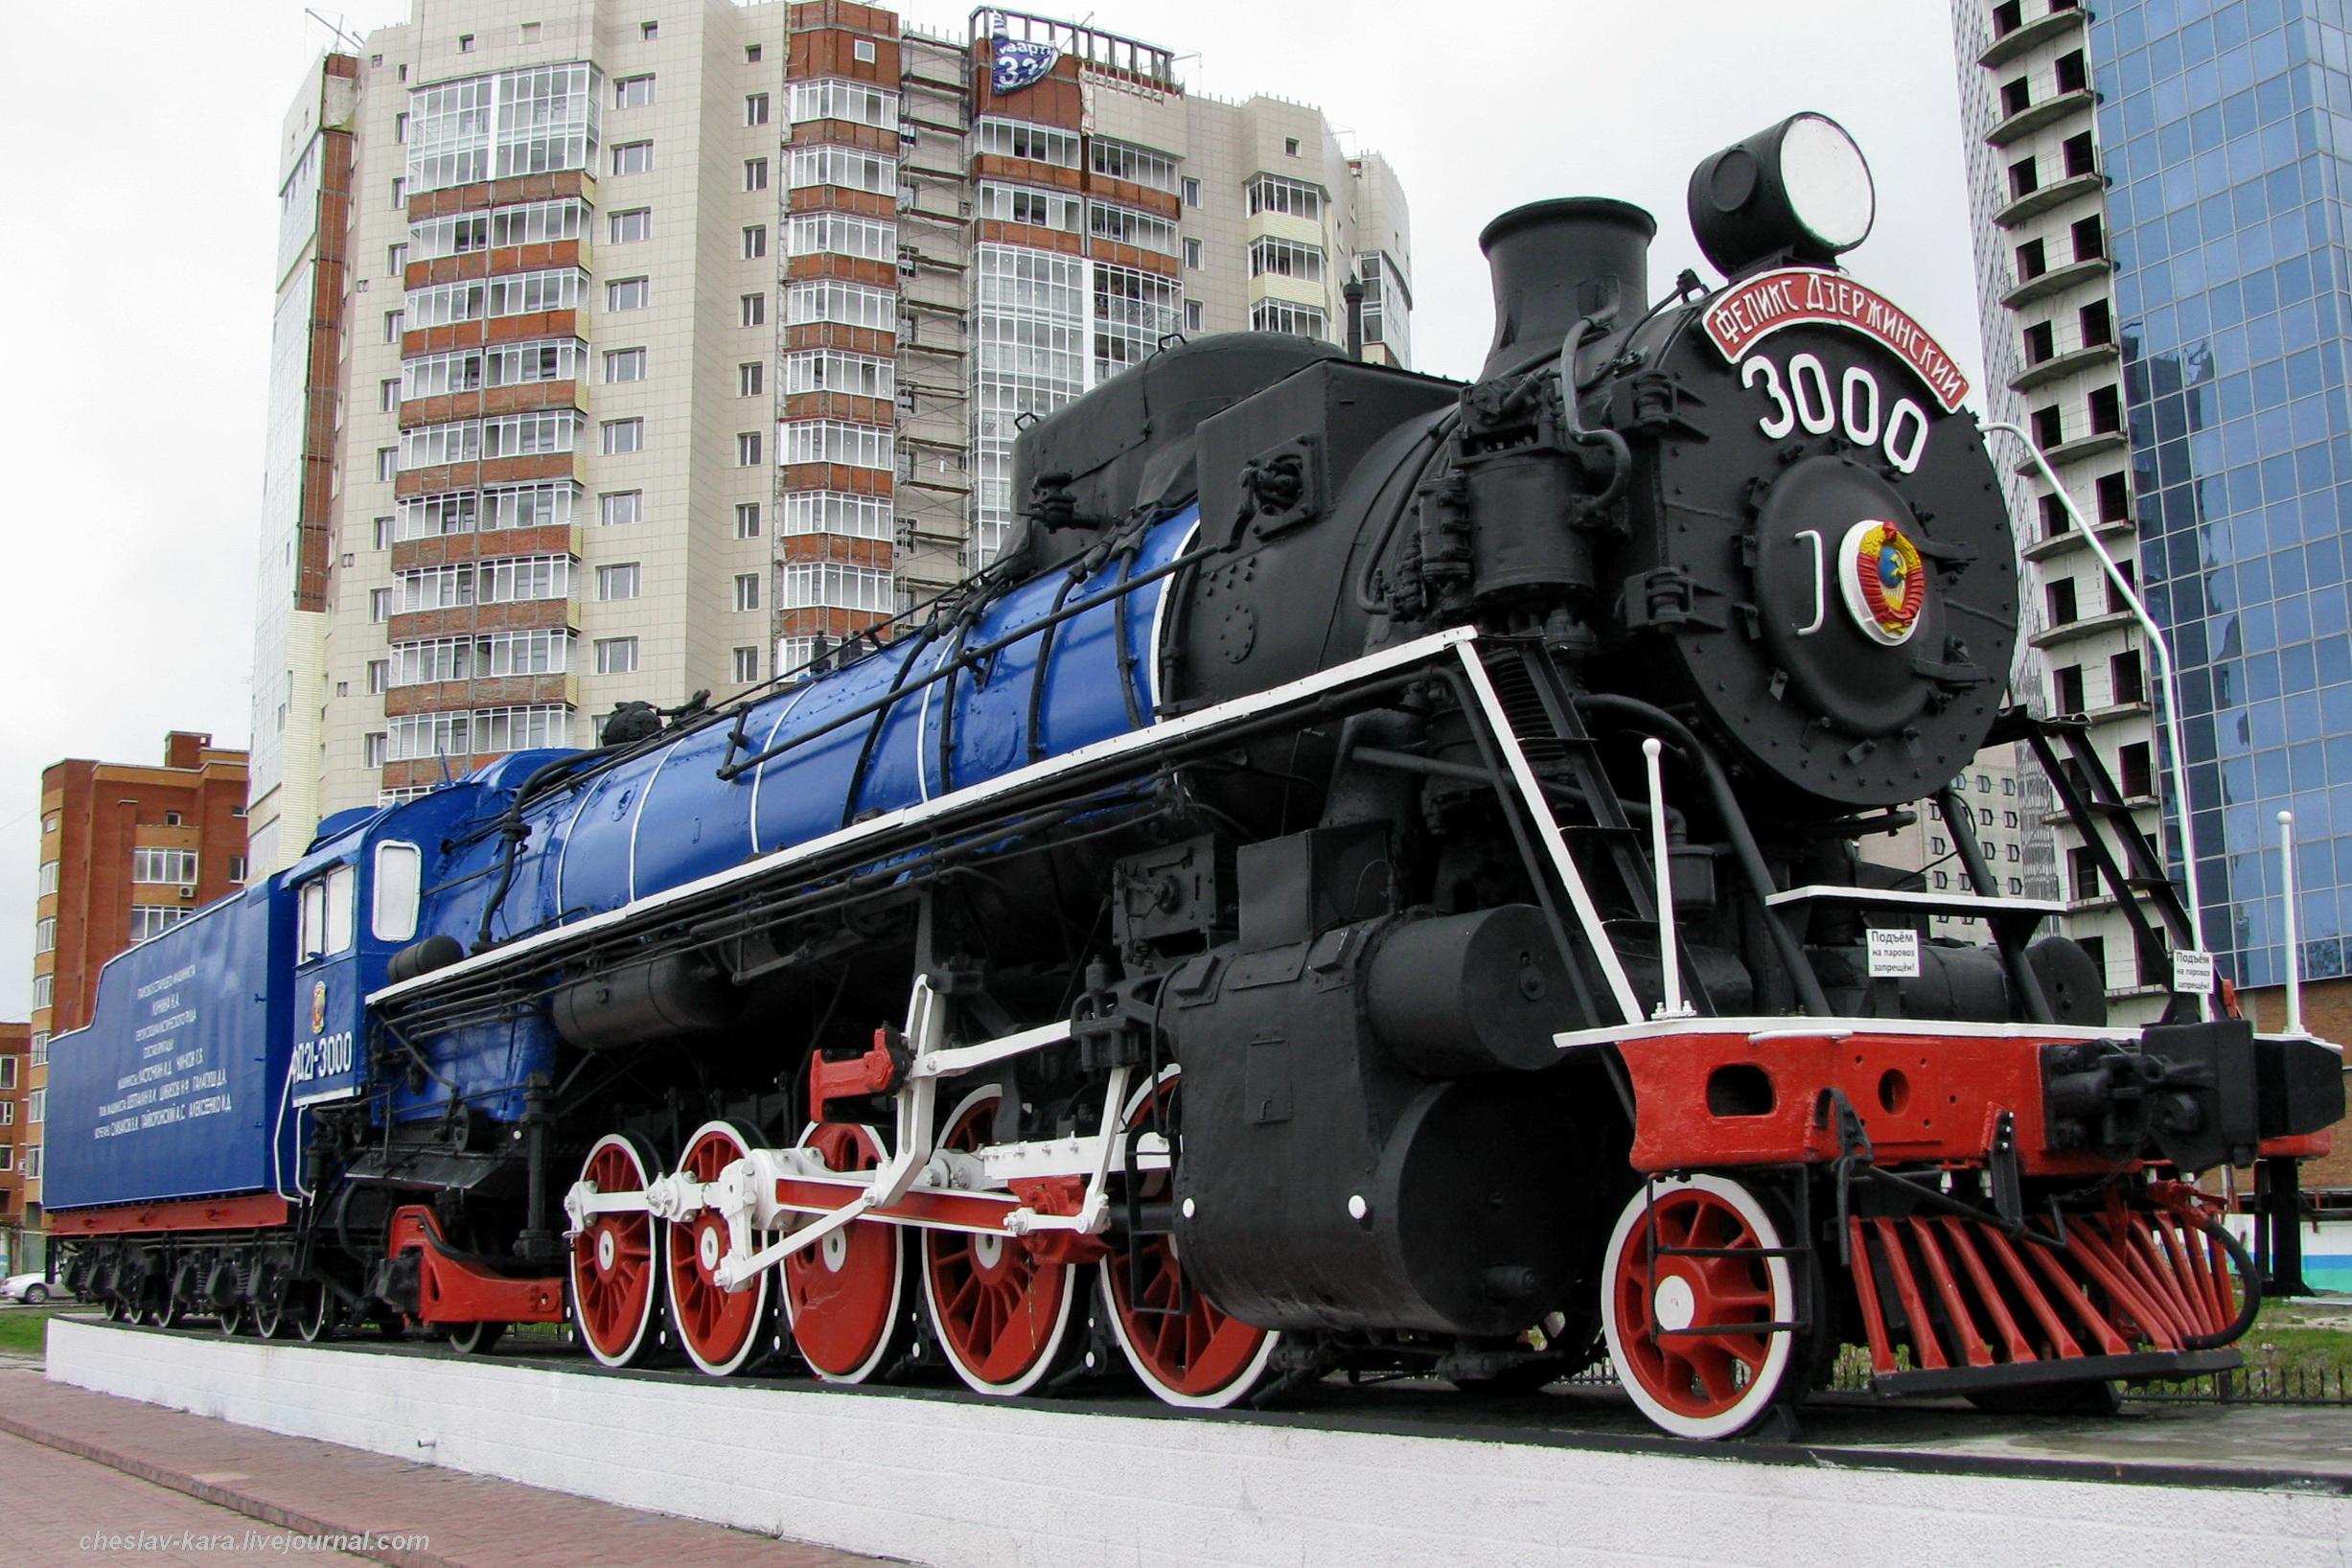 纪念战争期间铁路工人在后方的英勇劳动,以及苏联时代的蒸汽机车制造